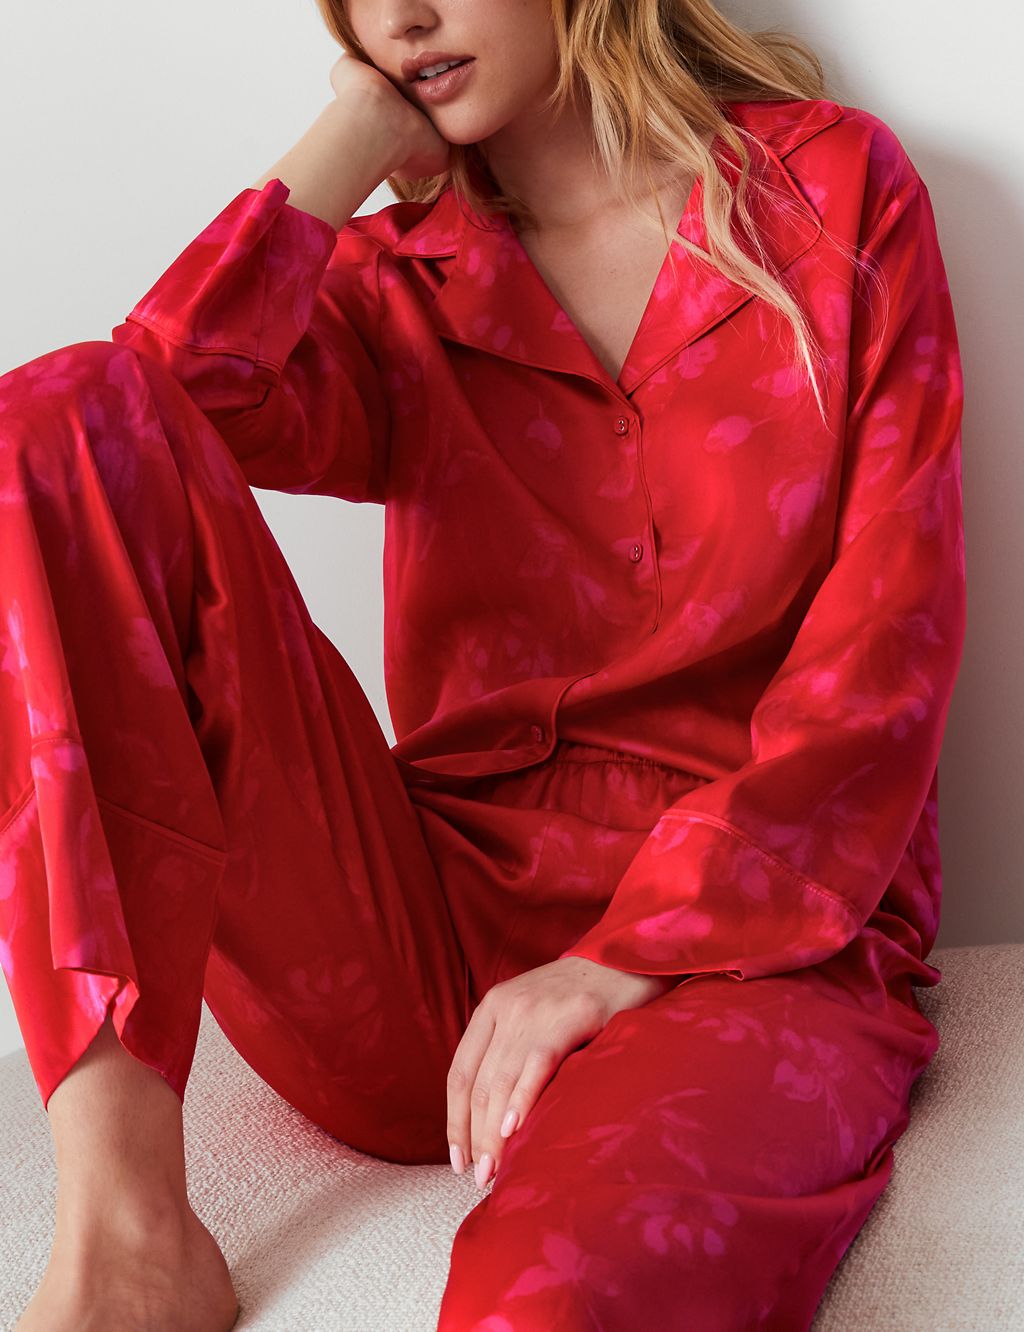 Dream Satin™ Printed Pyjama Set 2 of 6